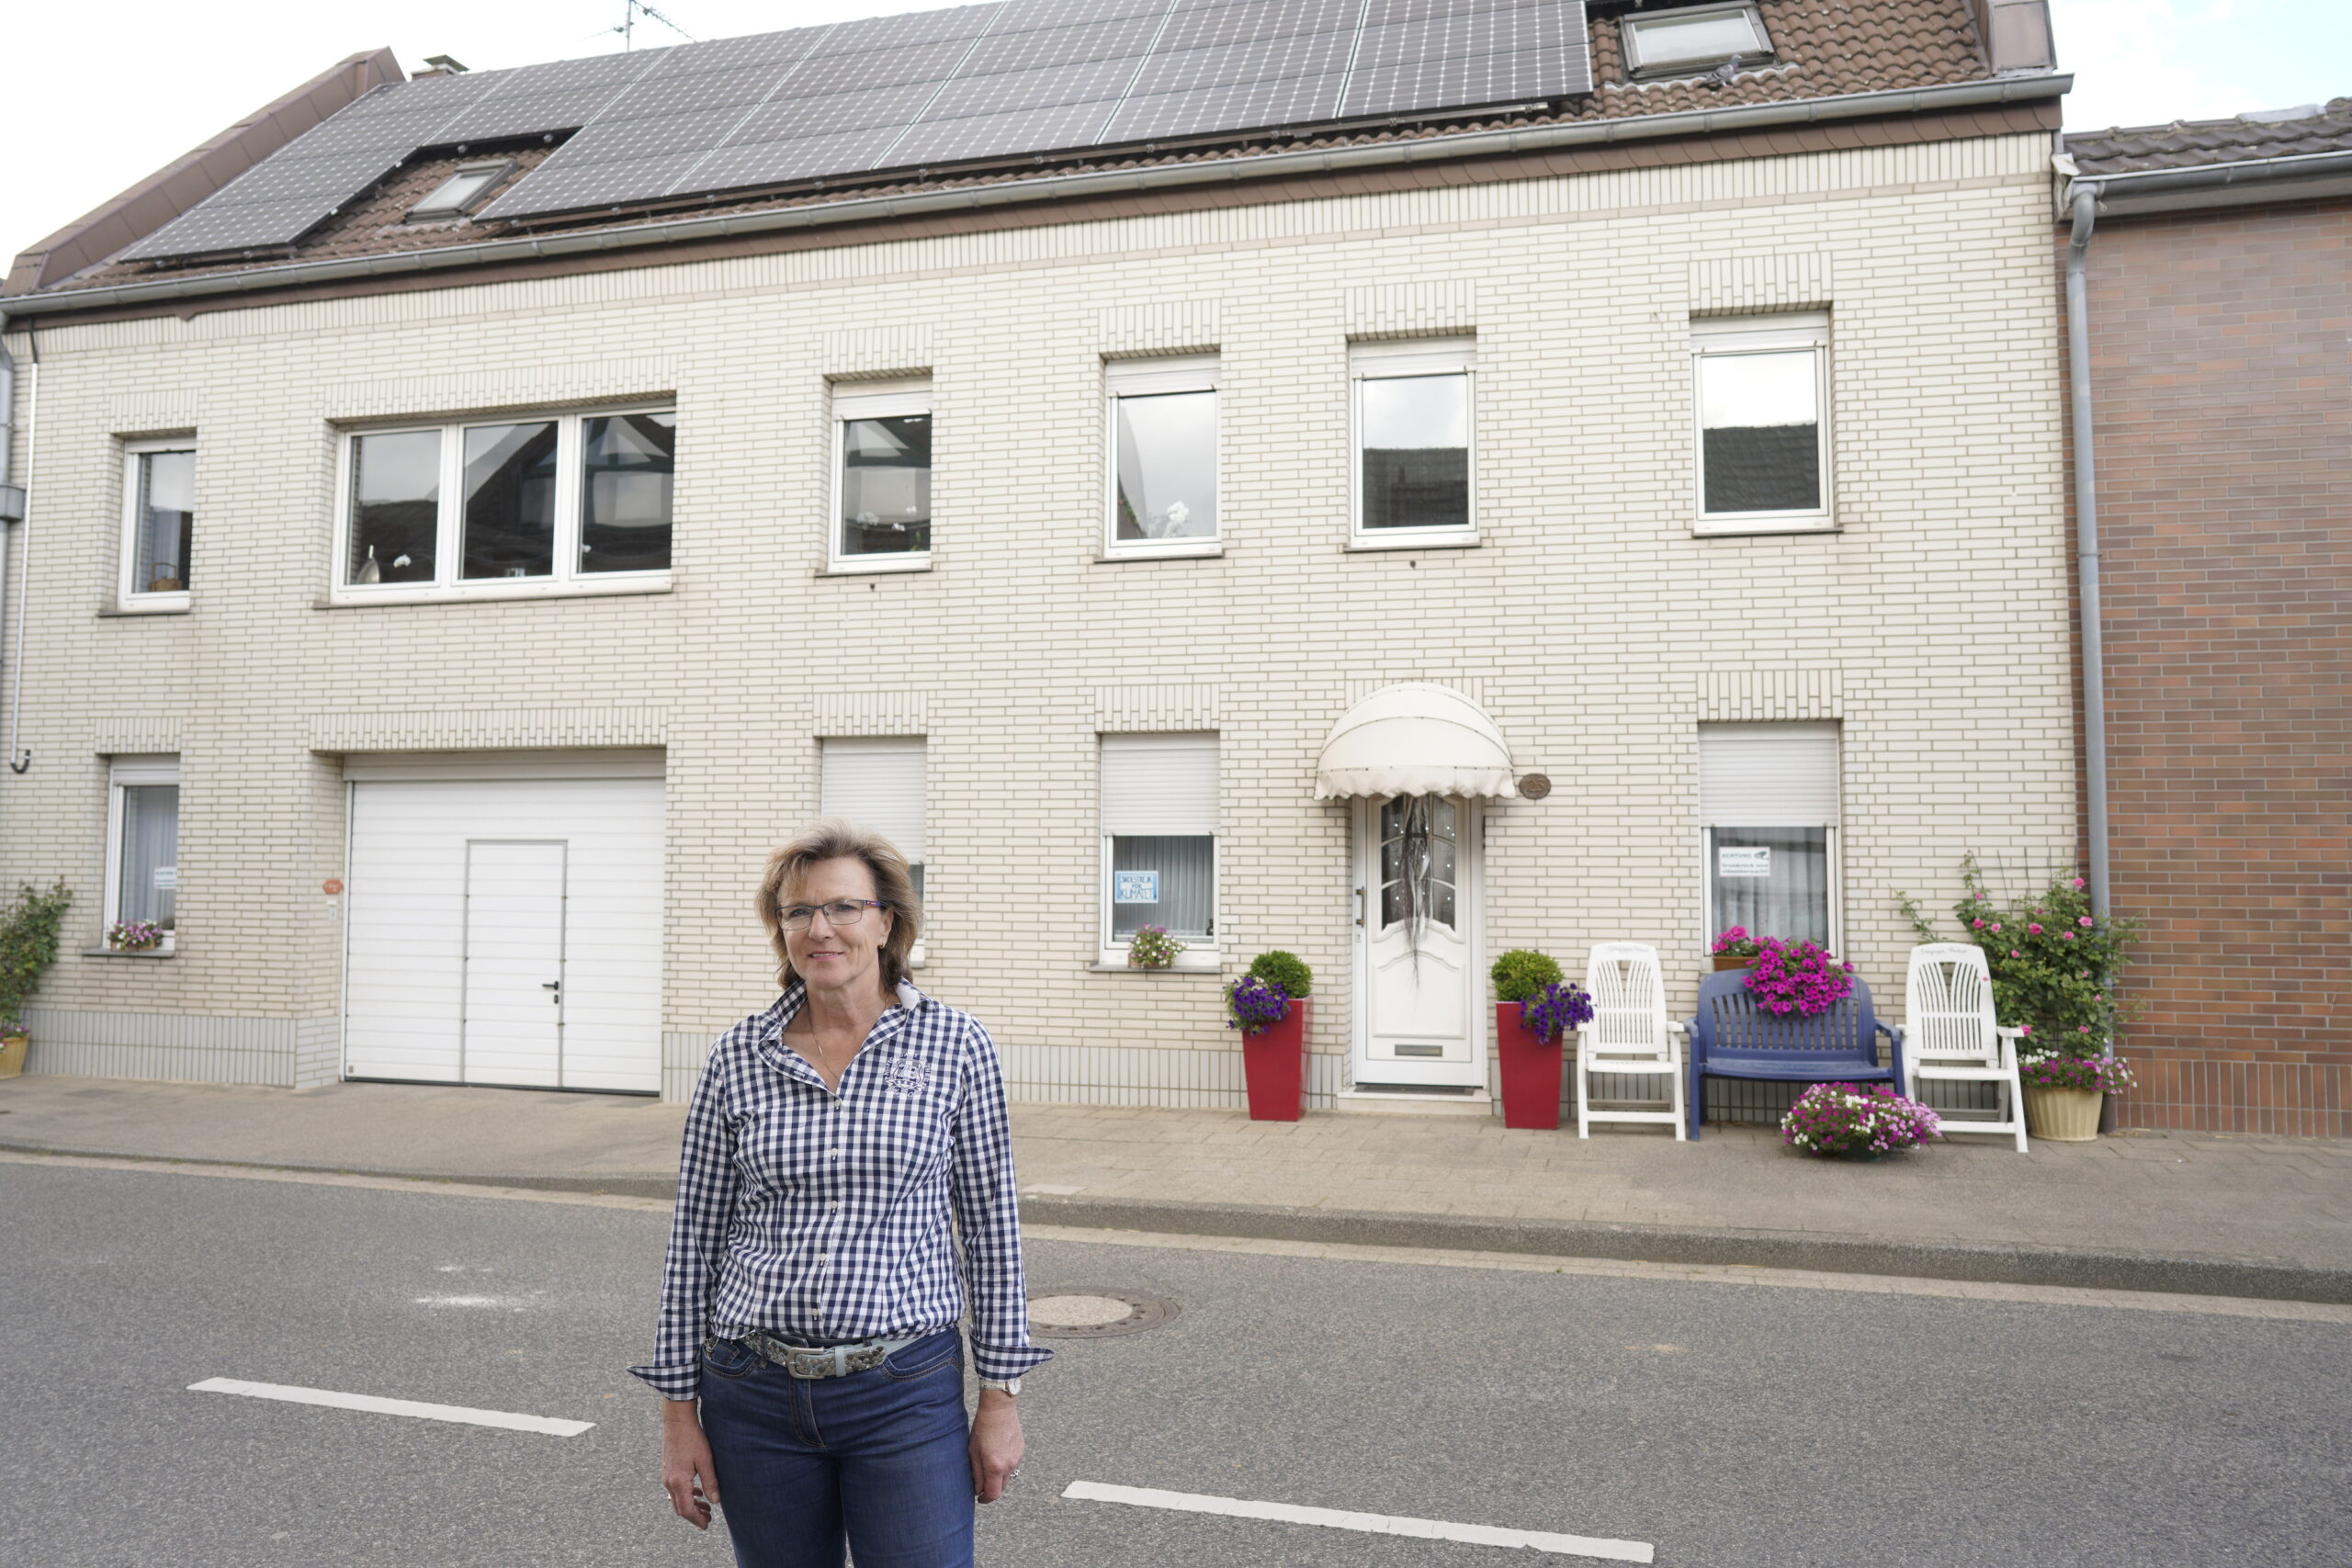 Barbara Ziemann-Oberherr vor ihrem Haus mit PV-Anlage auf dem Dach